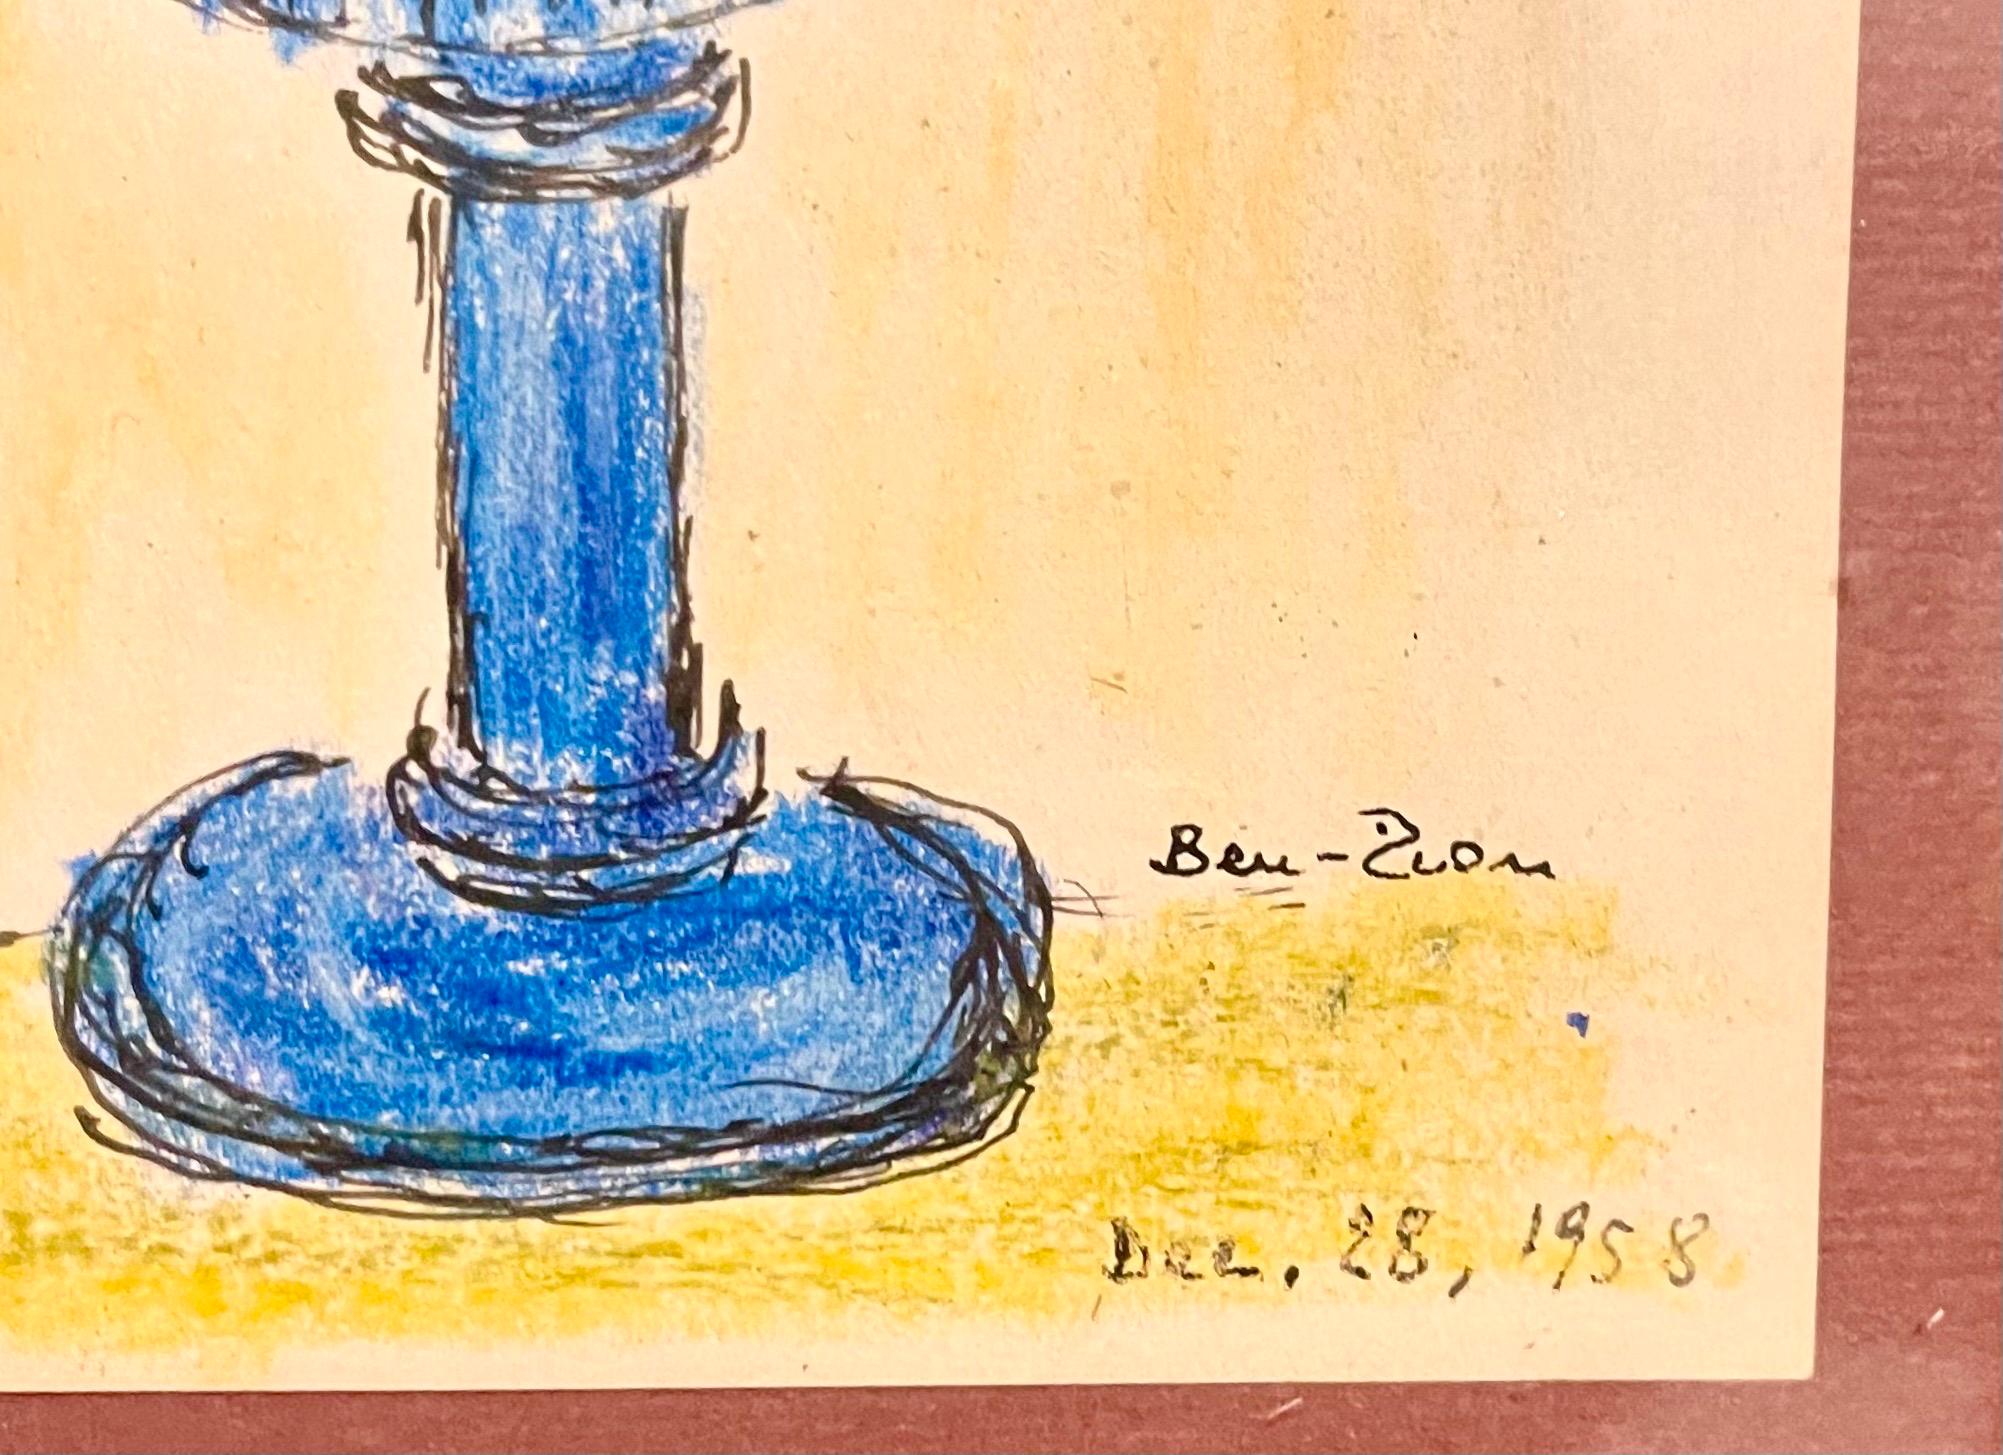 Expressionistische Tusche- und Pastellkreidezeichnung von Blumen in einer Vase. 
Gerahmt in einem kobaltblauen Originalrahmen aus Glas
Handsigniert und datiert
Gerahmt misst es 13,5 x 10,5
Das Papier ist 7,5 x 5,5 cm groß.

Der 1897 geborene